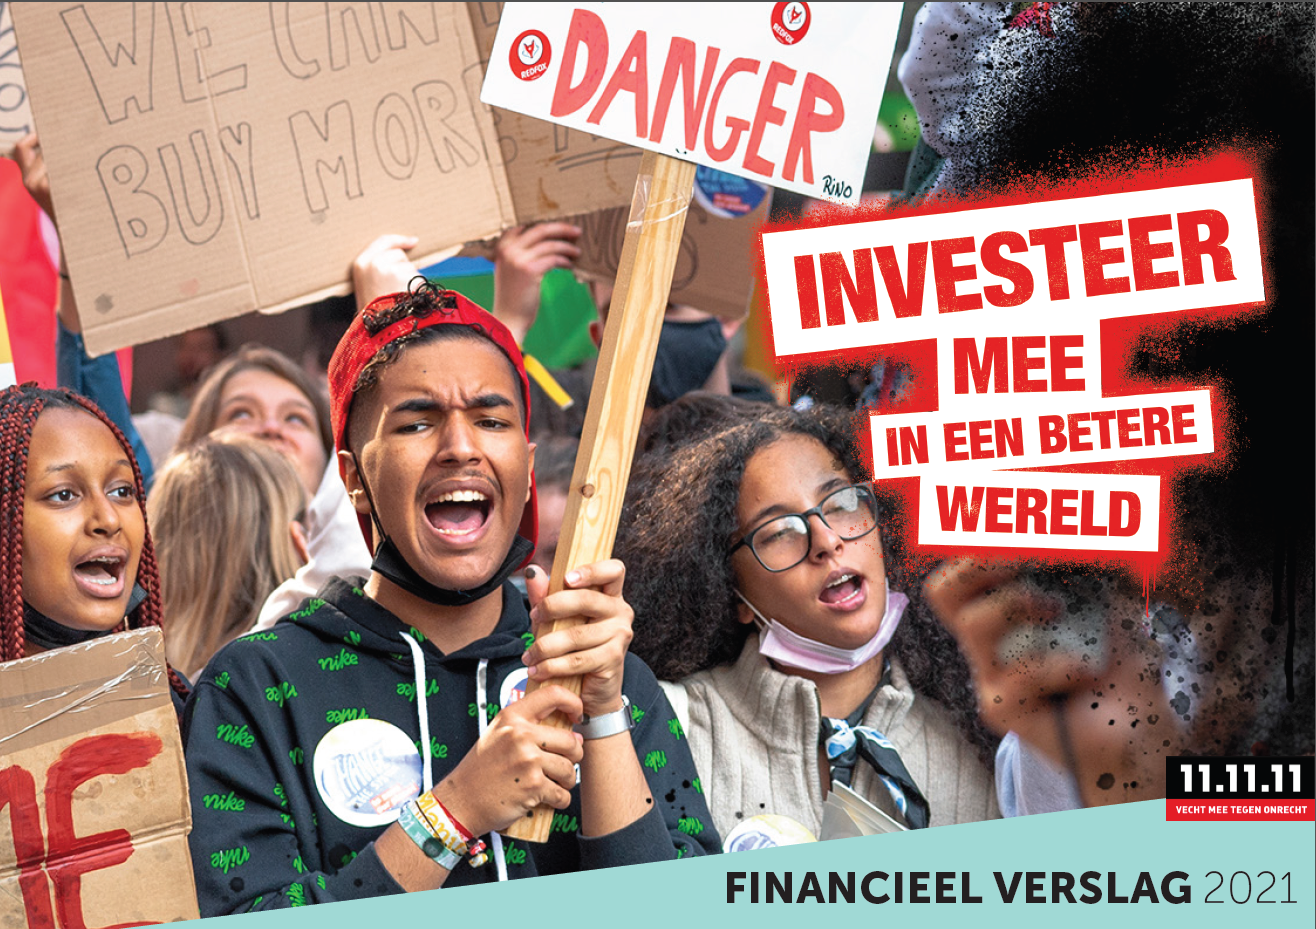 Cover financieel verslag 2021 - Investeer mee in een betere wereld